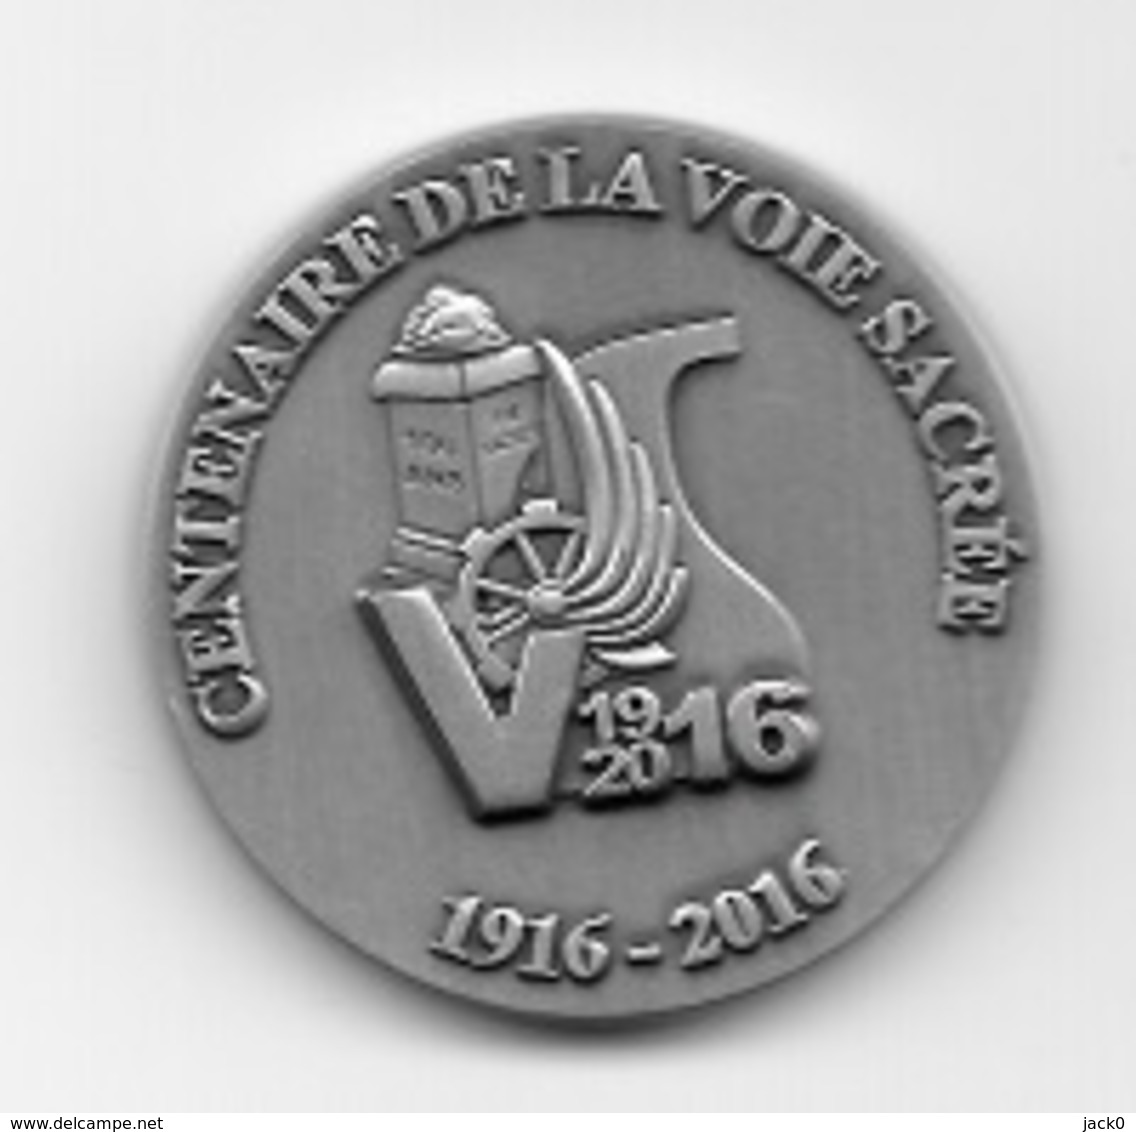 Coin  Militaire  Ville, CENTENAIRE  DE  LA  VOIE  SACREE  1916 - 2016  Verso  ARMÉE  DU  TRAIN, VERDUN  ( 55 ) - France